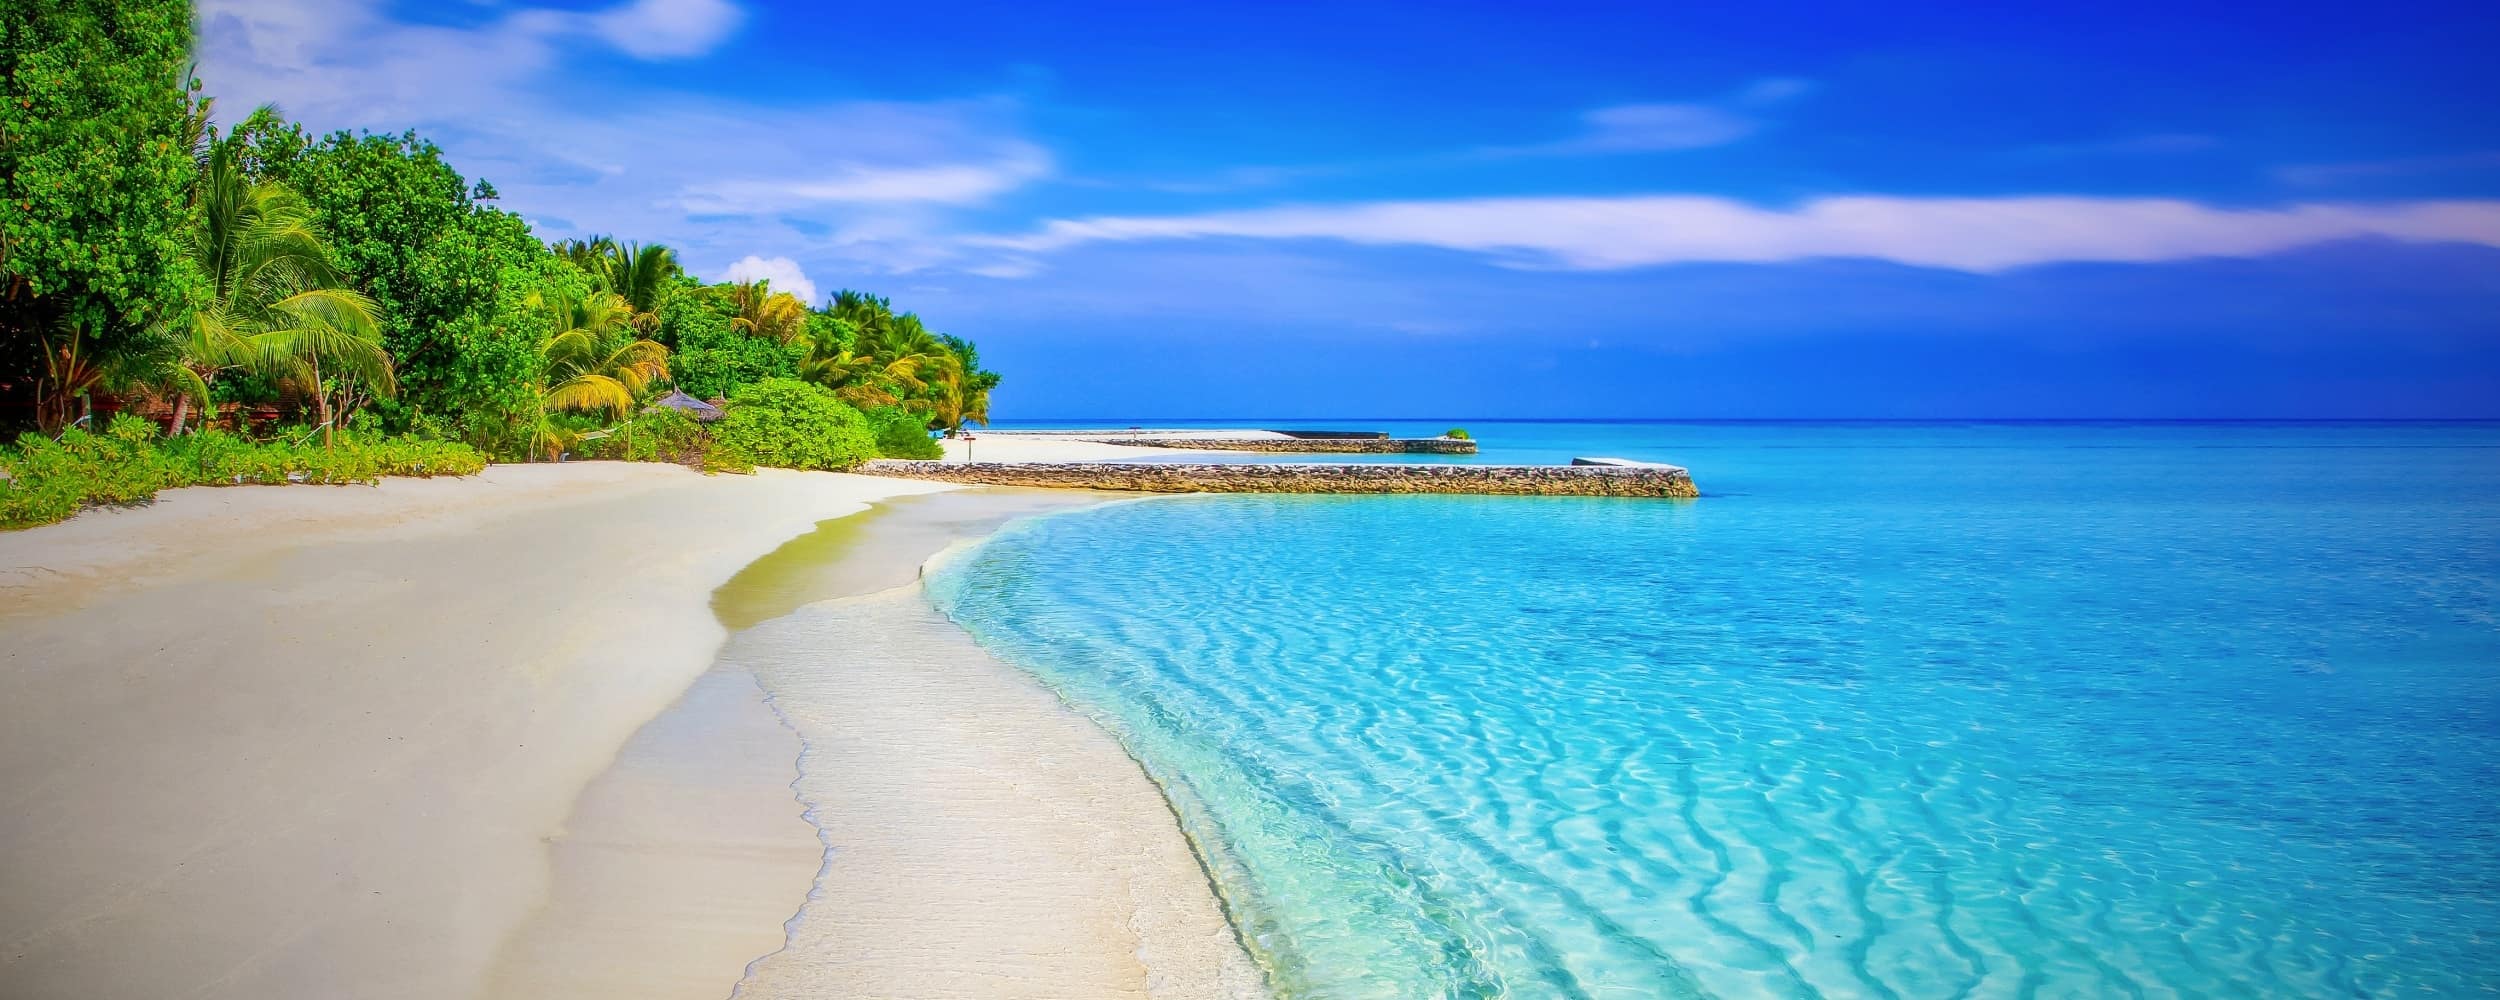 Best sunny beach holiday destinations near and far